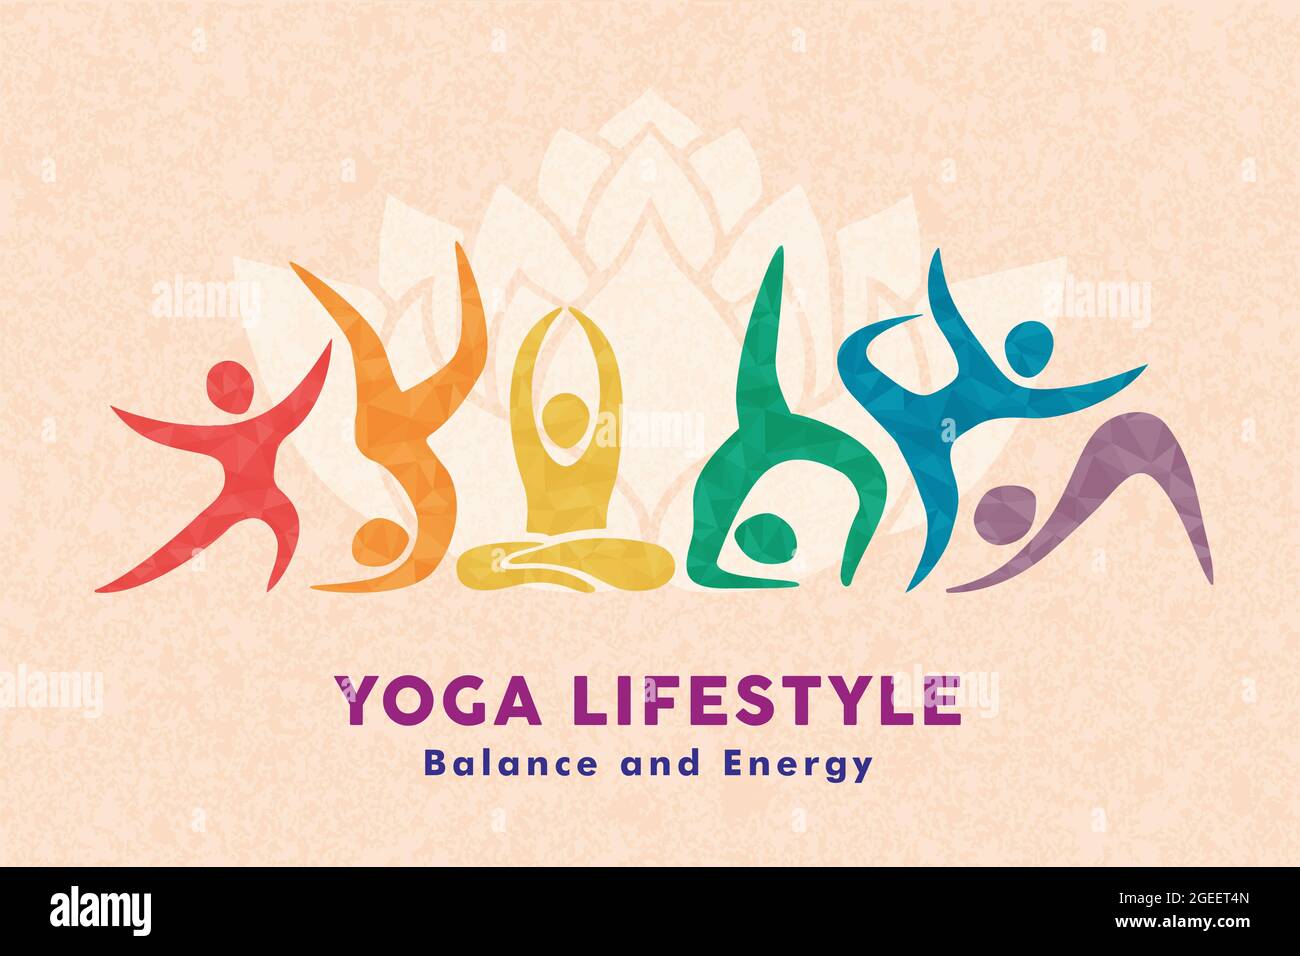 Yoga Lifestyle Illustration von verschiedenen bunten Menschen Gruppe tun Meditation Posen in abstrakter Form Stil. Gesundheit und Körperbalance Konzept für fitne Stock Vektor